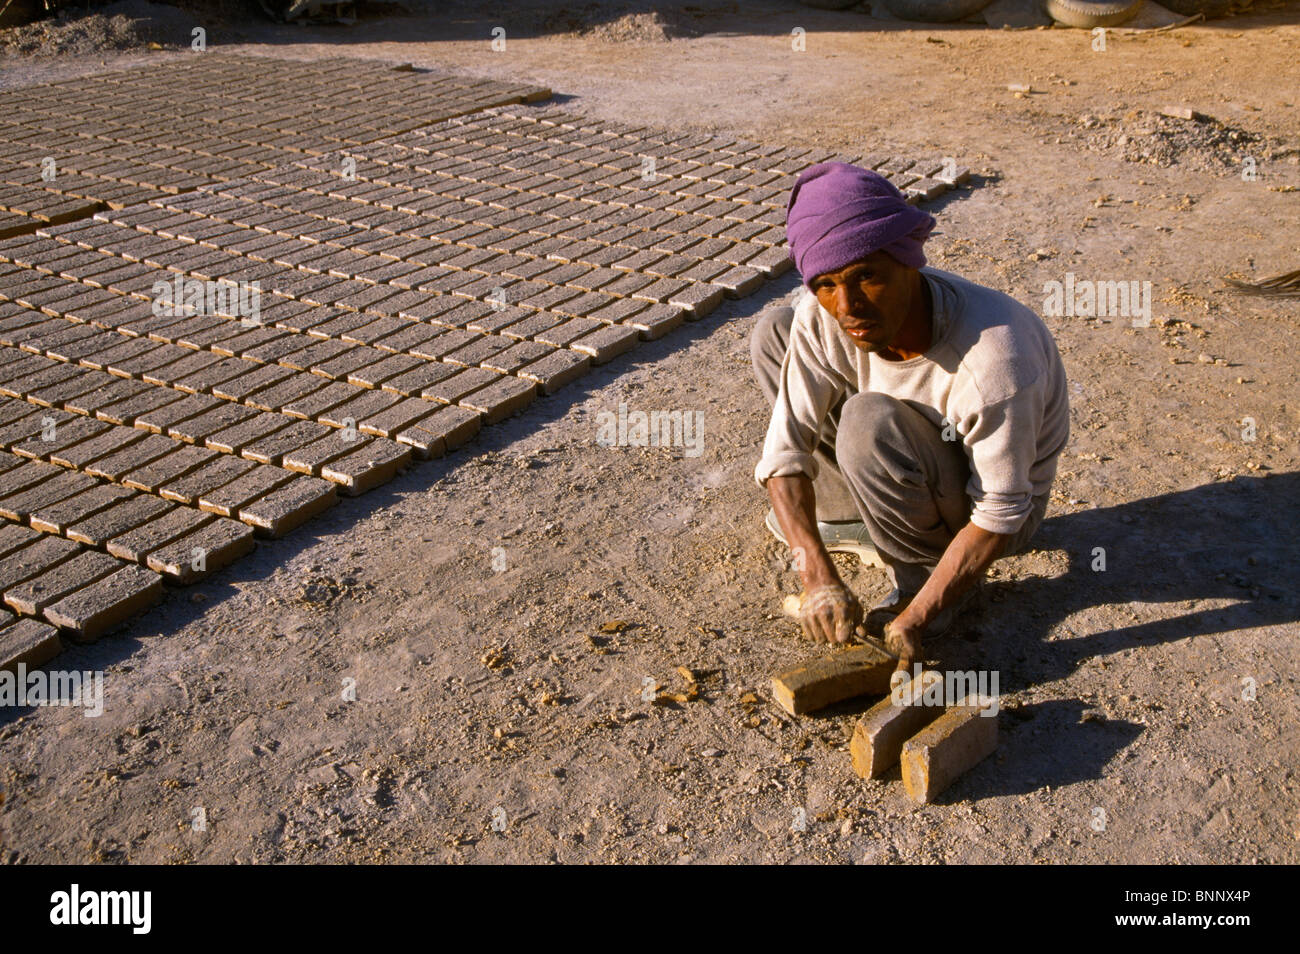 Nefta Tunisia Forming Mud Bricks & Drying Them In Sun Stock Photo